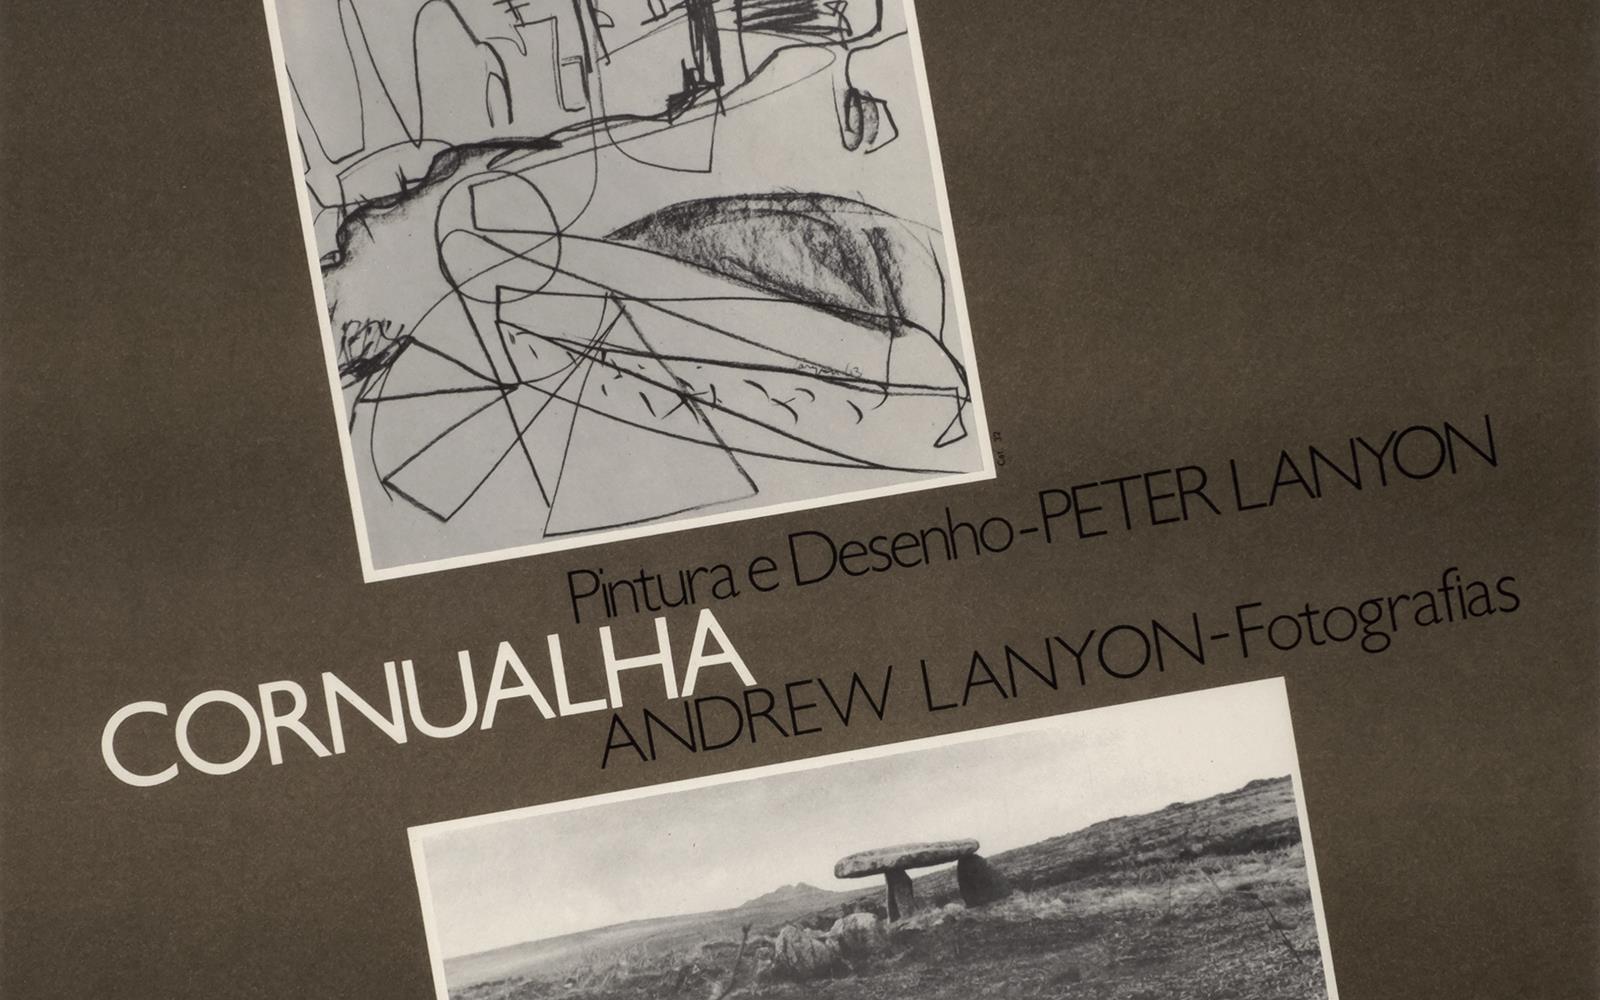 Cornualha. Pintura e Desenho: Peter Lanyon. Andrew Lanyon: Fotografias